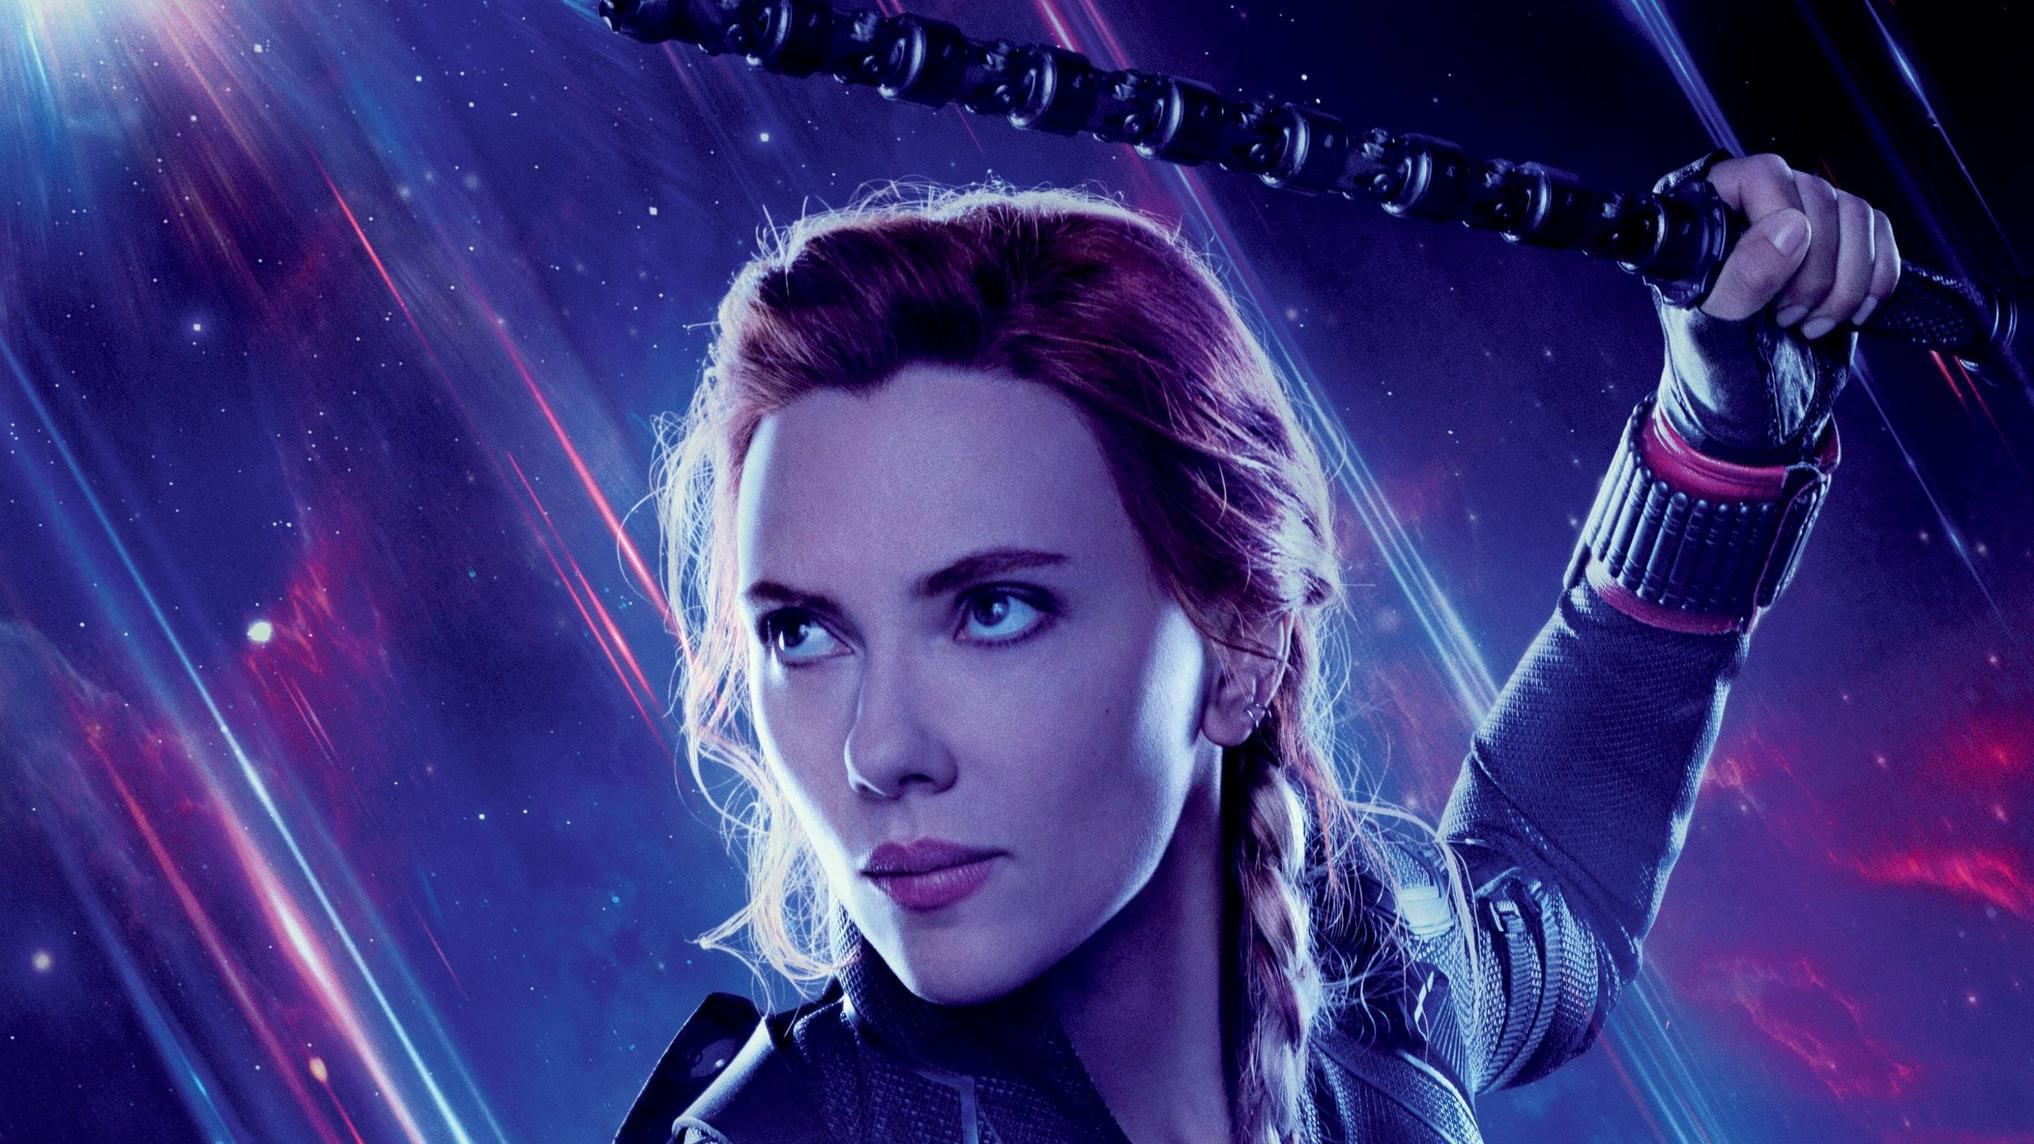 Scarlett Johansson As Black Widow In Avengers Wallpapers